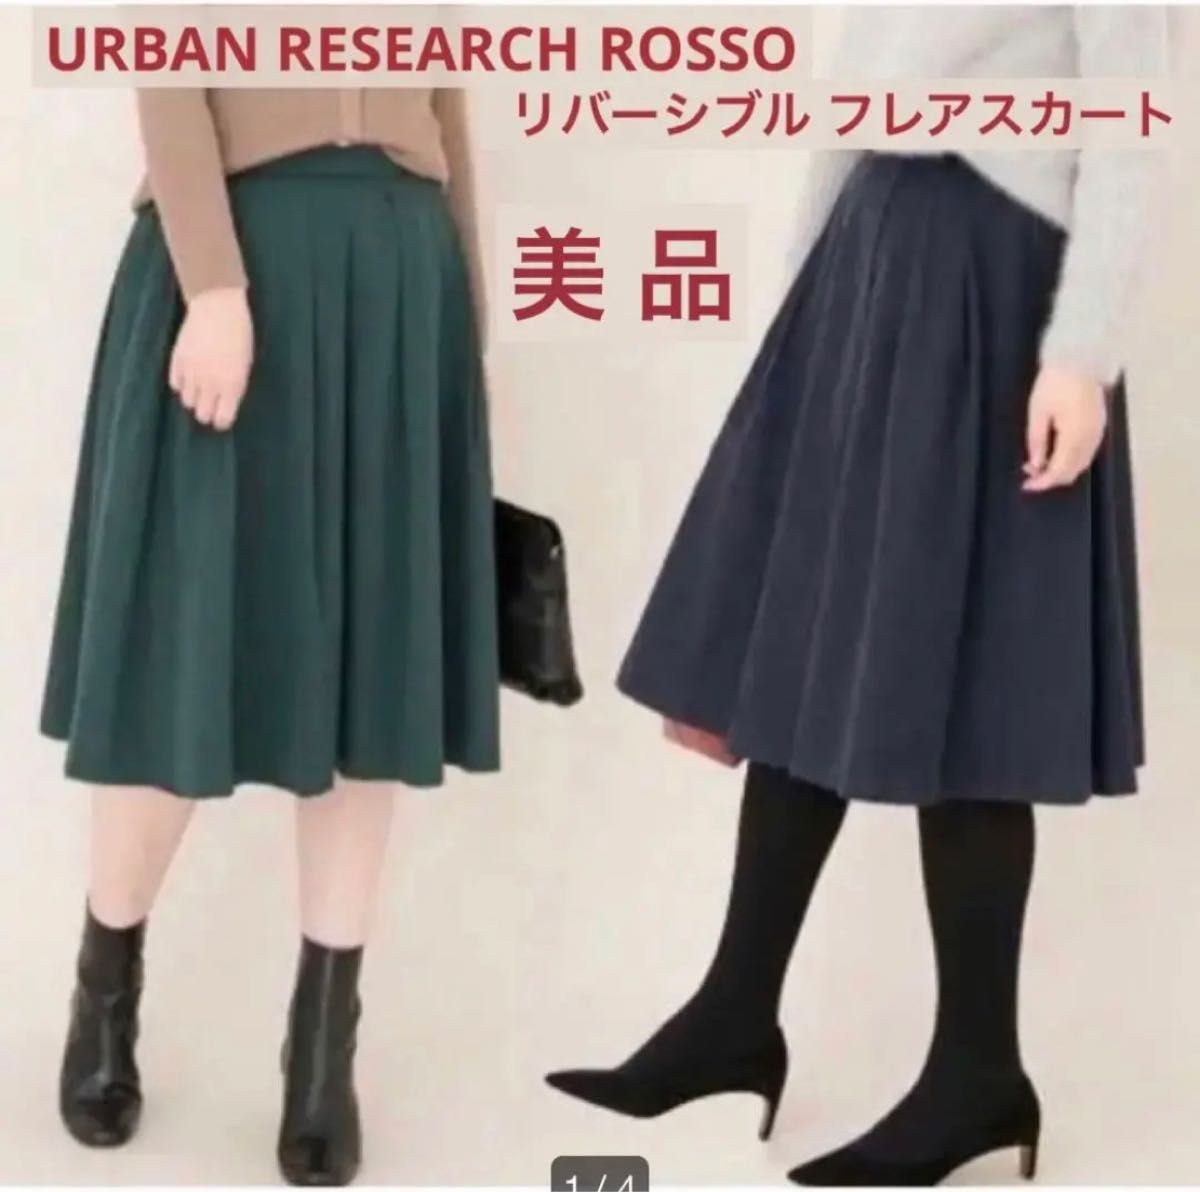 【美品】URBAN RESEARCH ROSSO リバーシブル フレアスカート 36 ネイビー 緑 アーバンリサーチ ロッソ